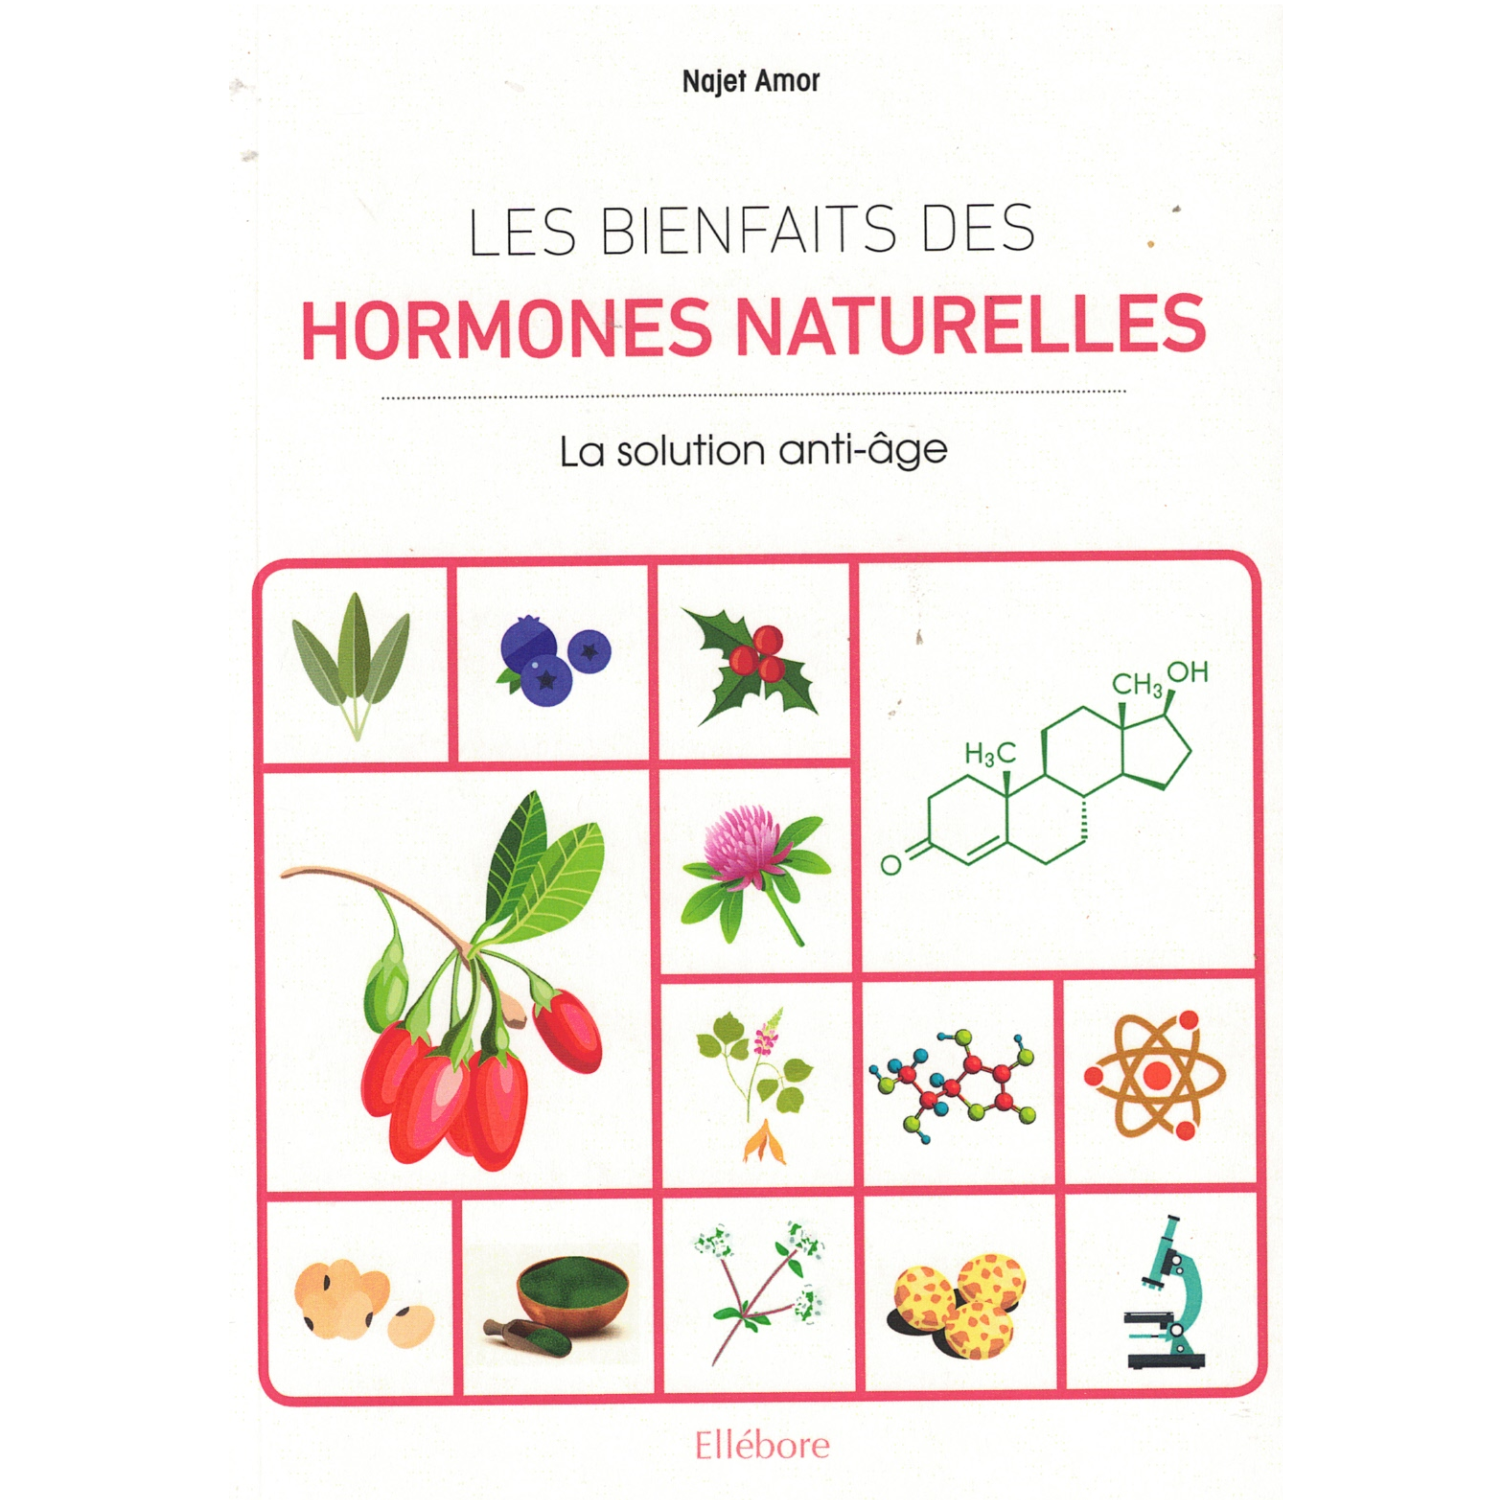 Les bienfaits des hormones naturelles